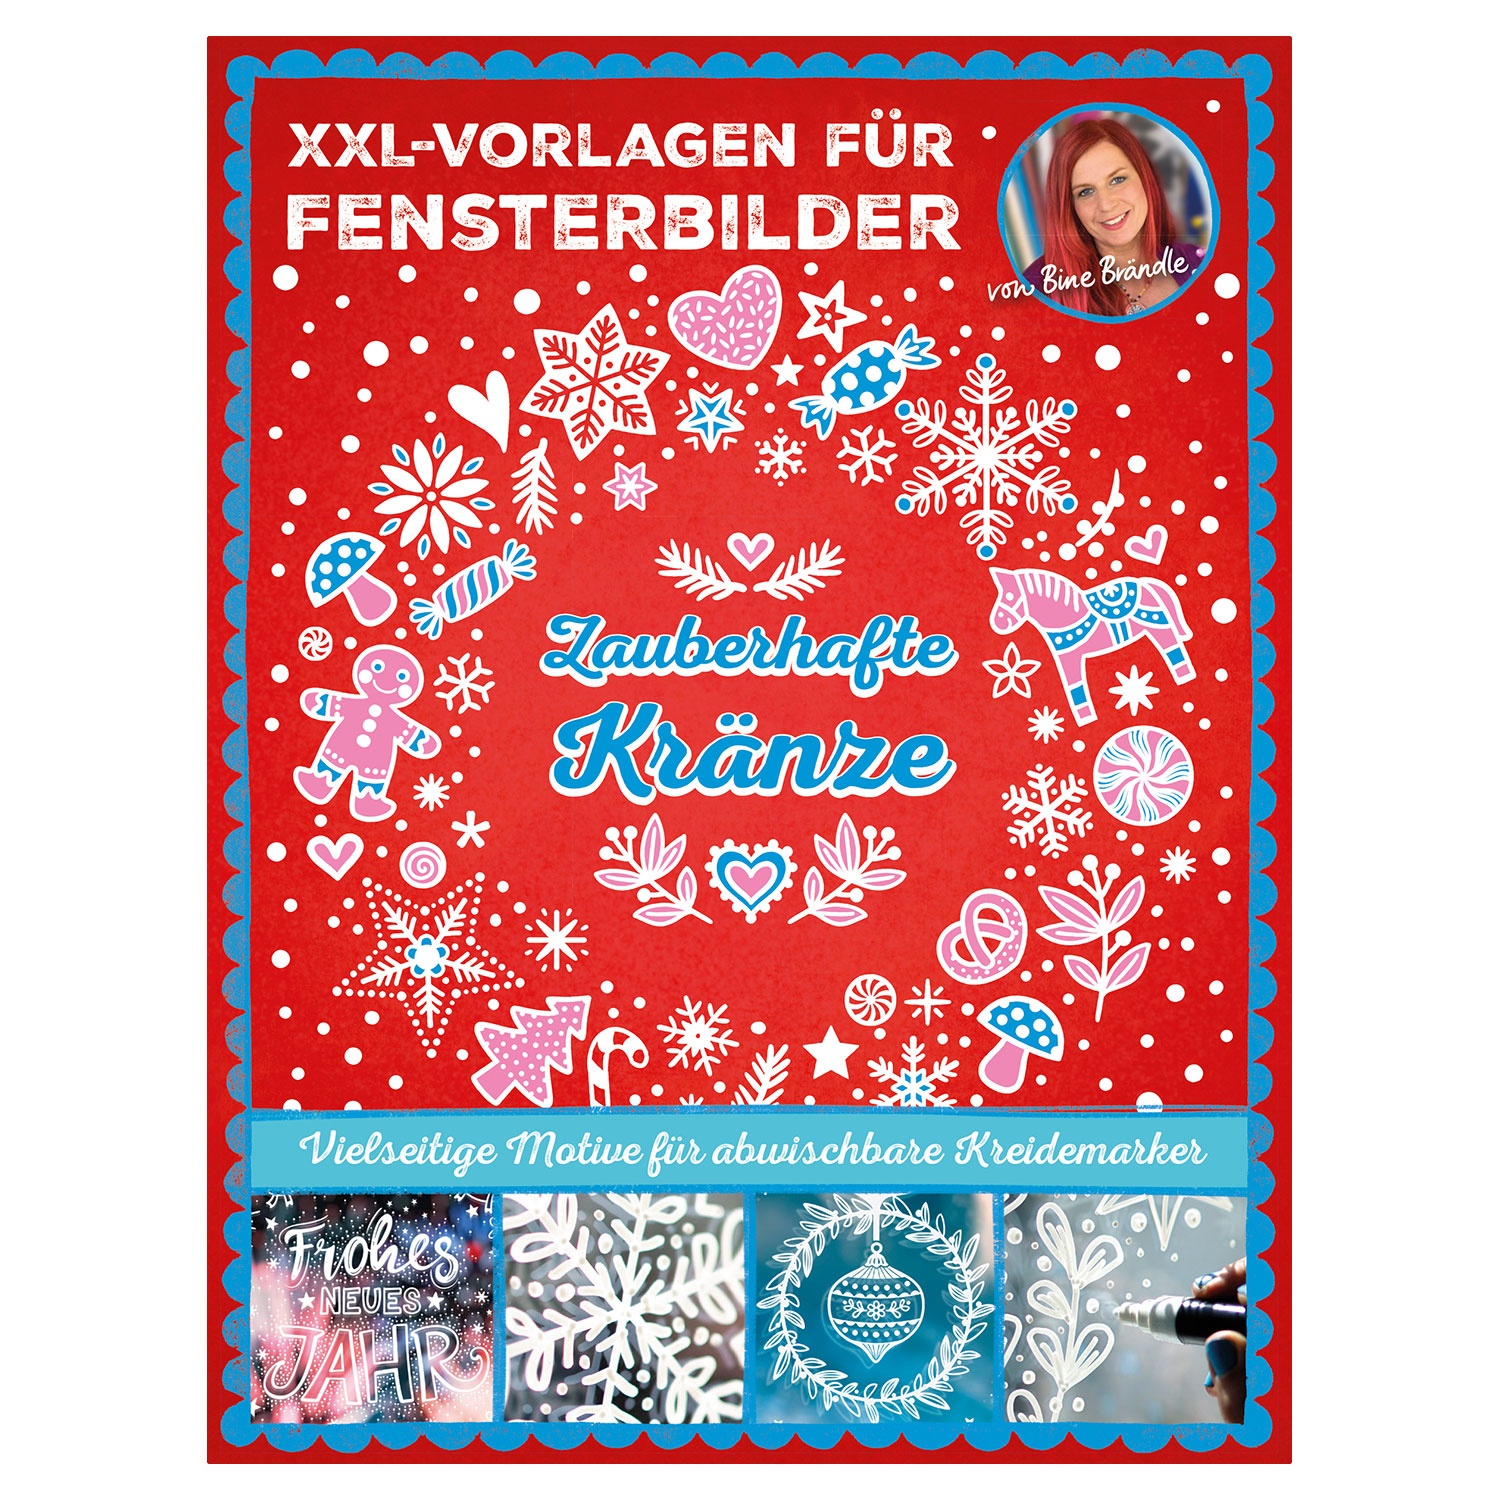 XXL Vorlagen für Fensterbilder by Bine Brändle   ALDI SÜD